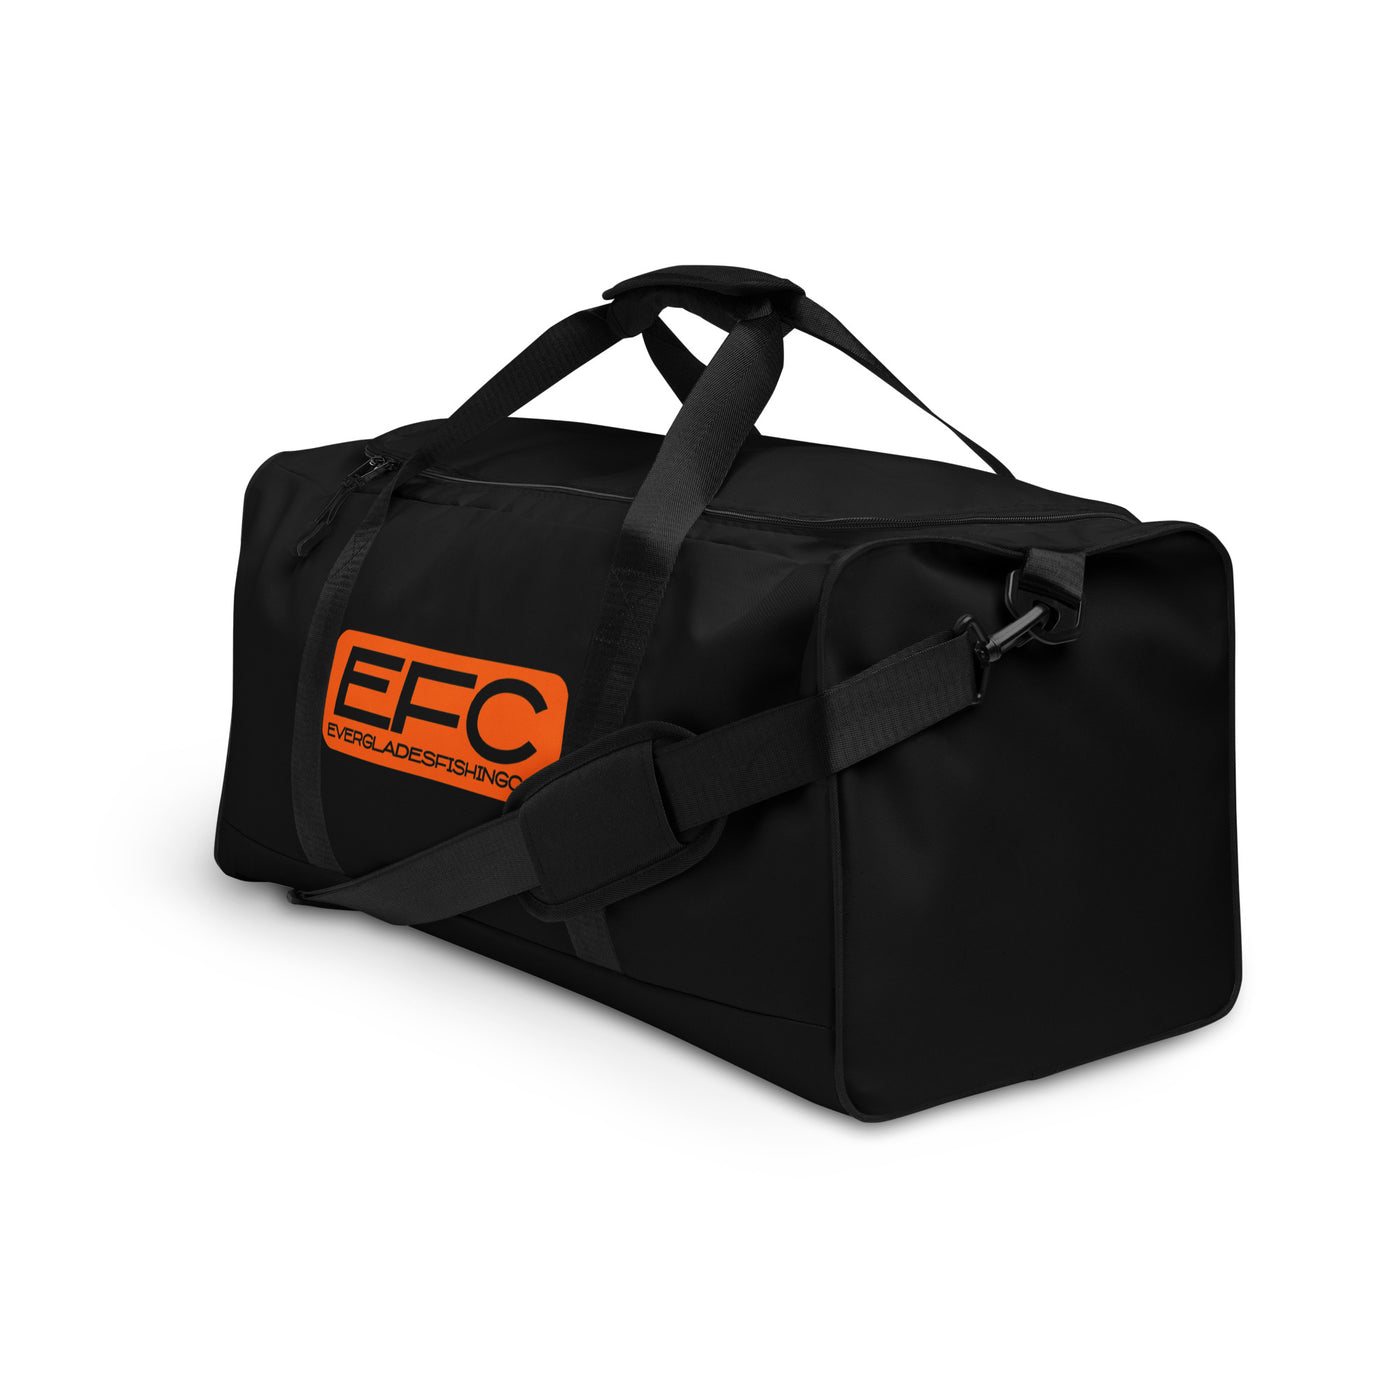 EFC Hunt Duffle bag